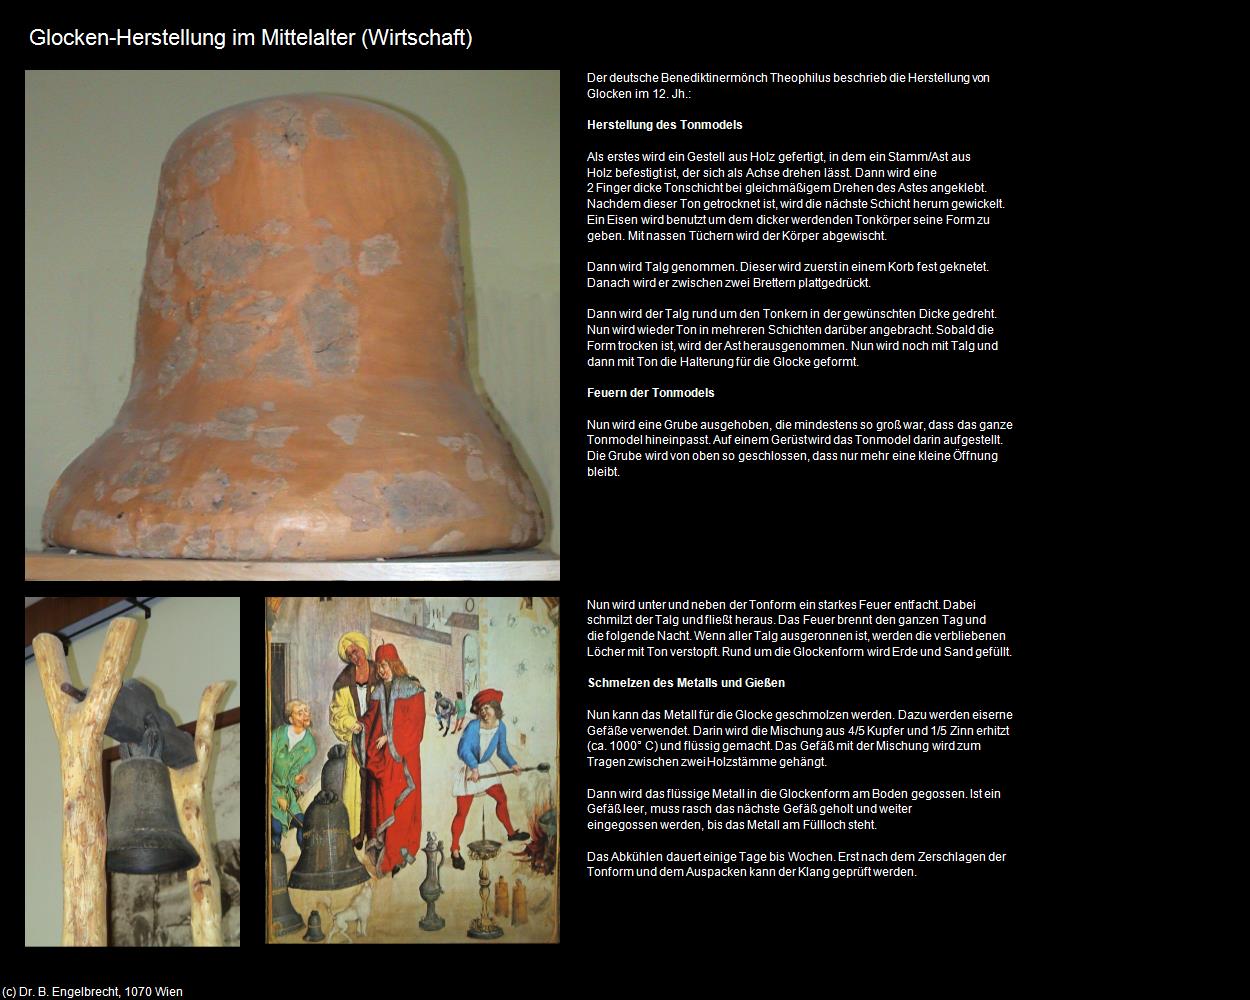 Glocken-Herstellung im Mittelalter (pusztaszer) in UNGARN 